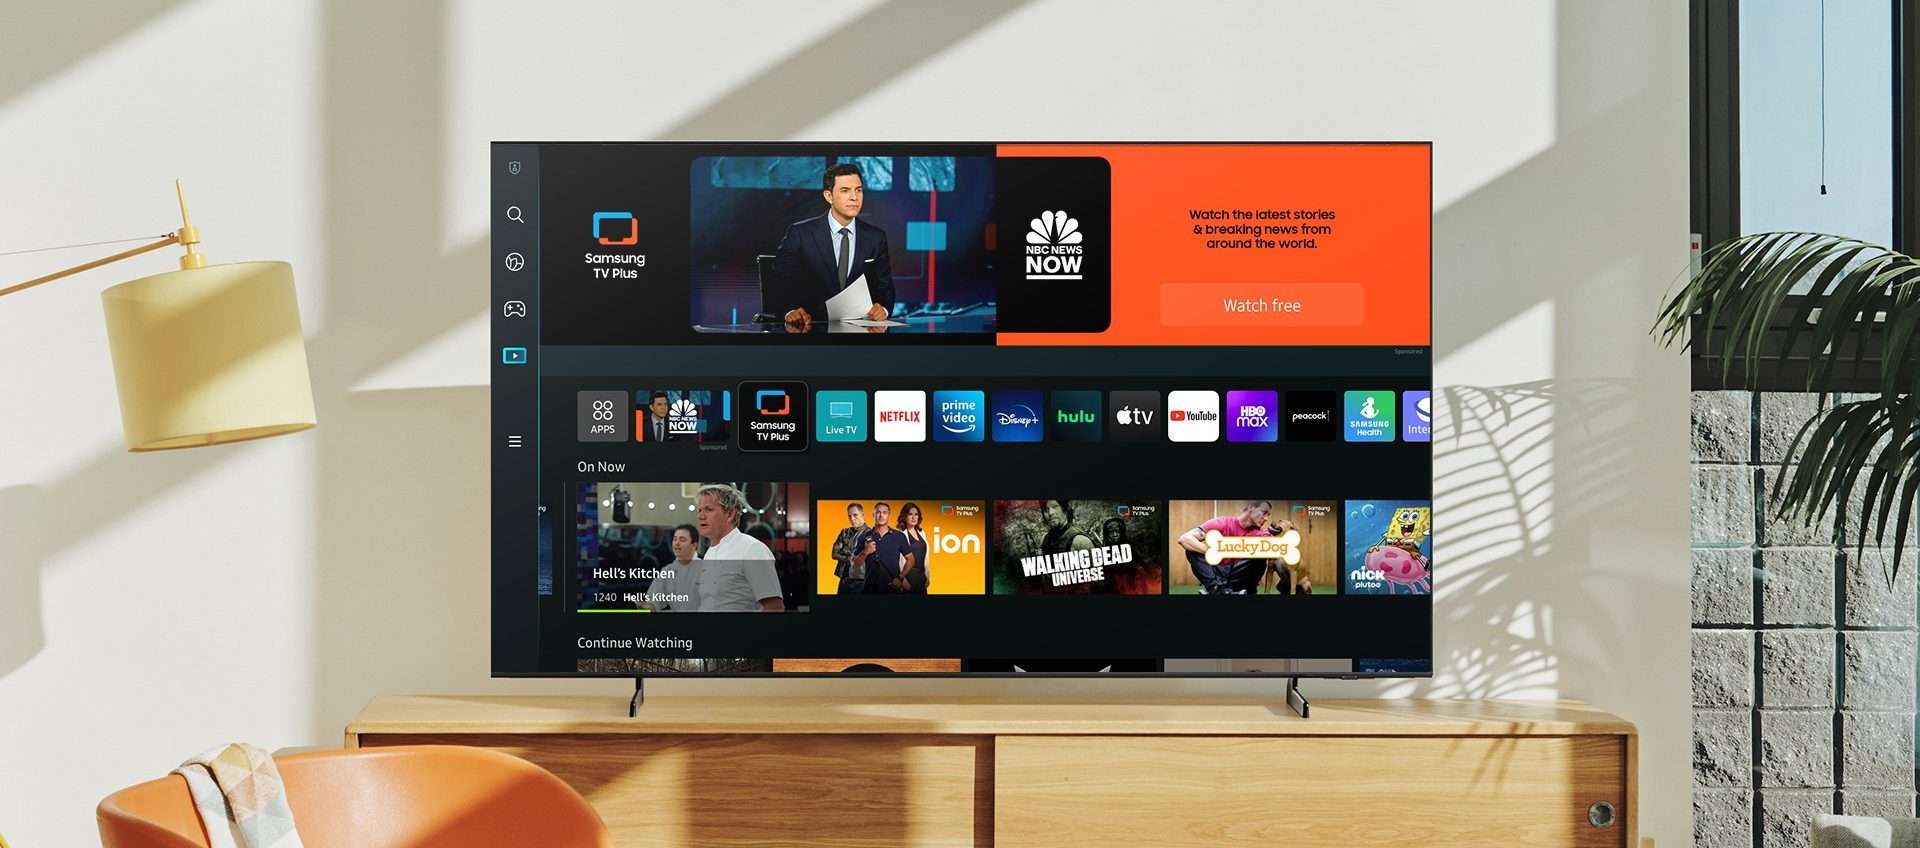 Smart TV Samsung da 65 pollici: tanta qualità a un SUPER PREZZO su Amazon (-288€)